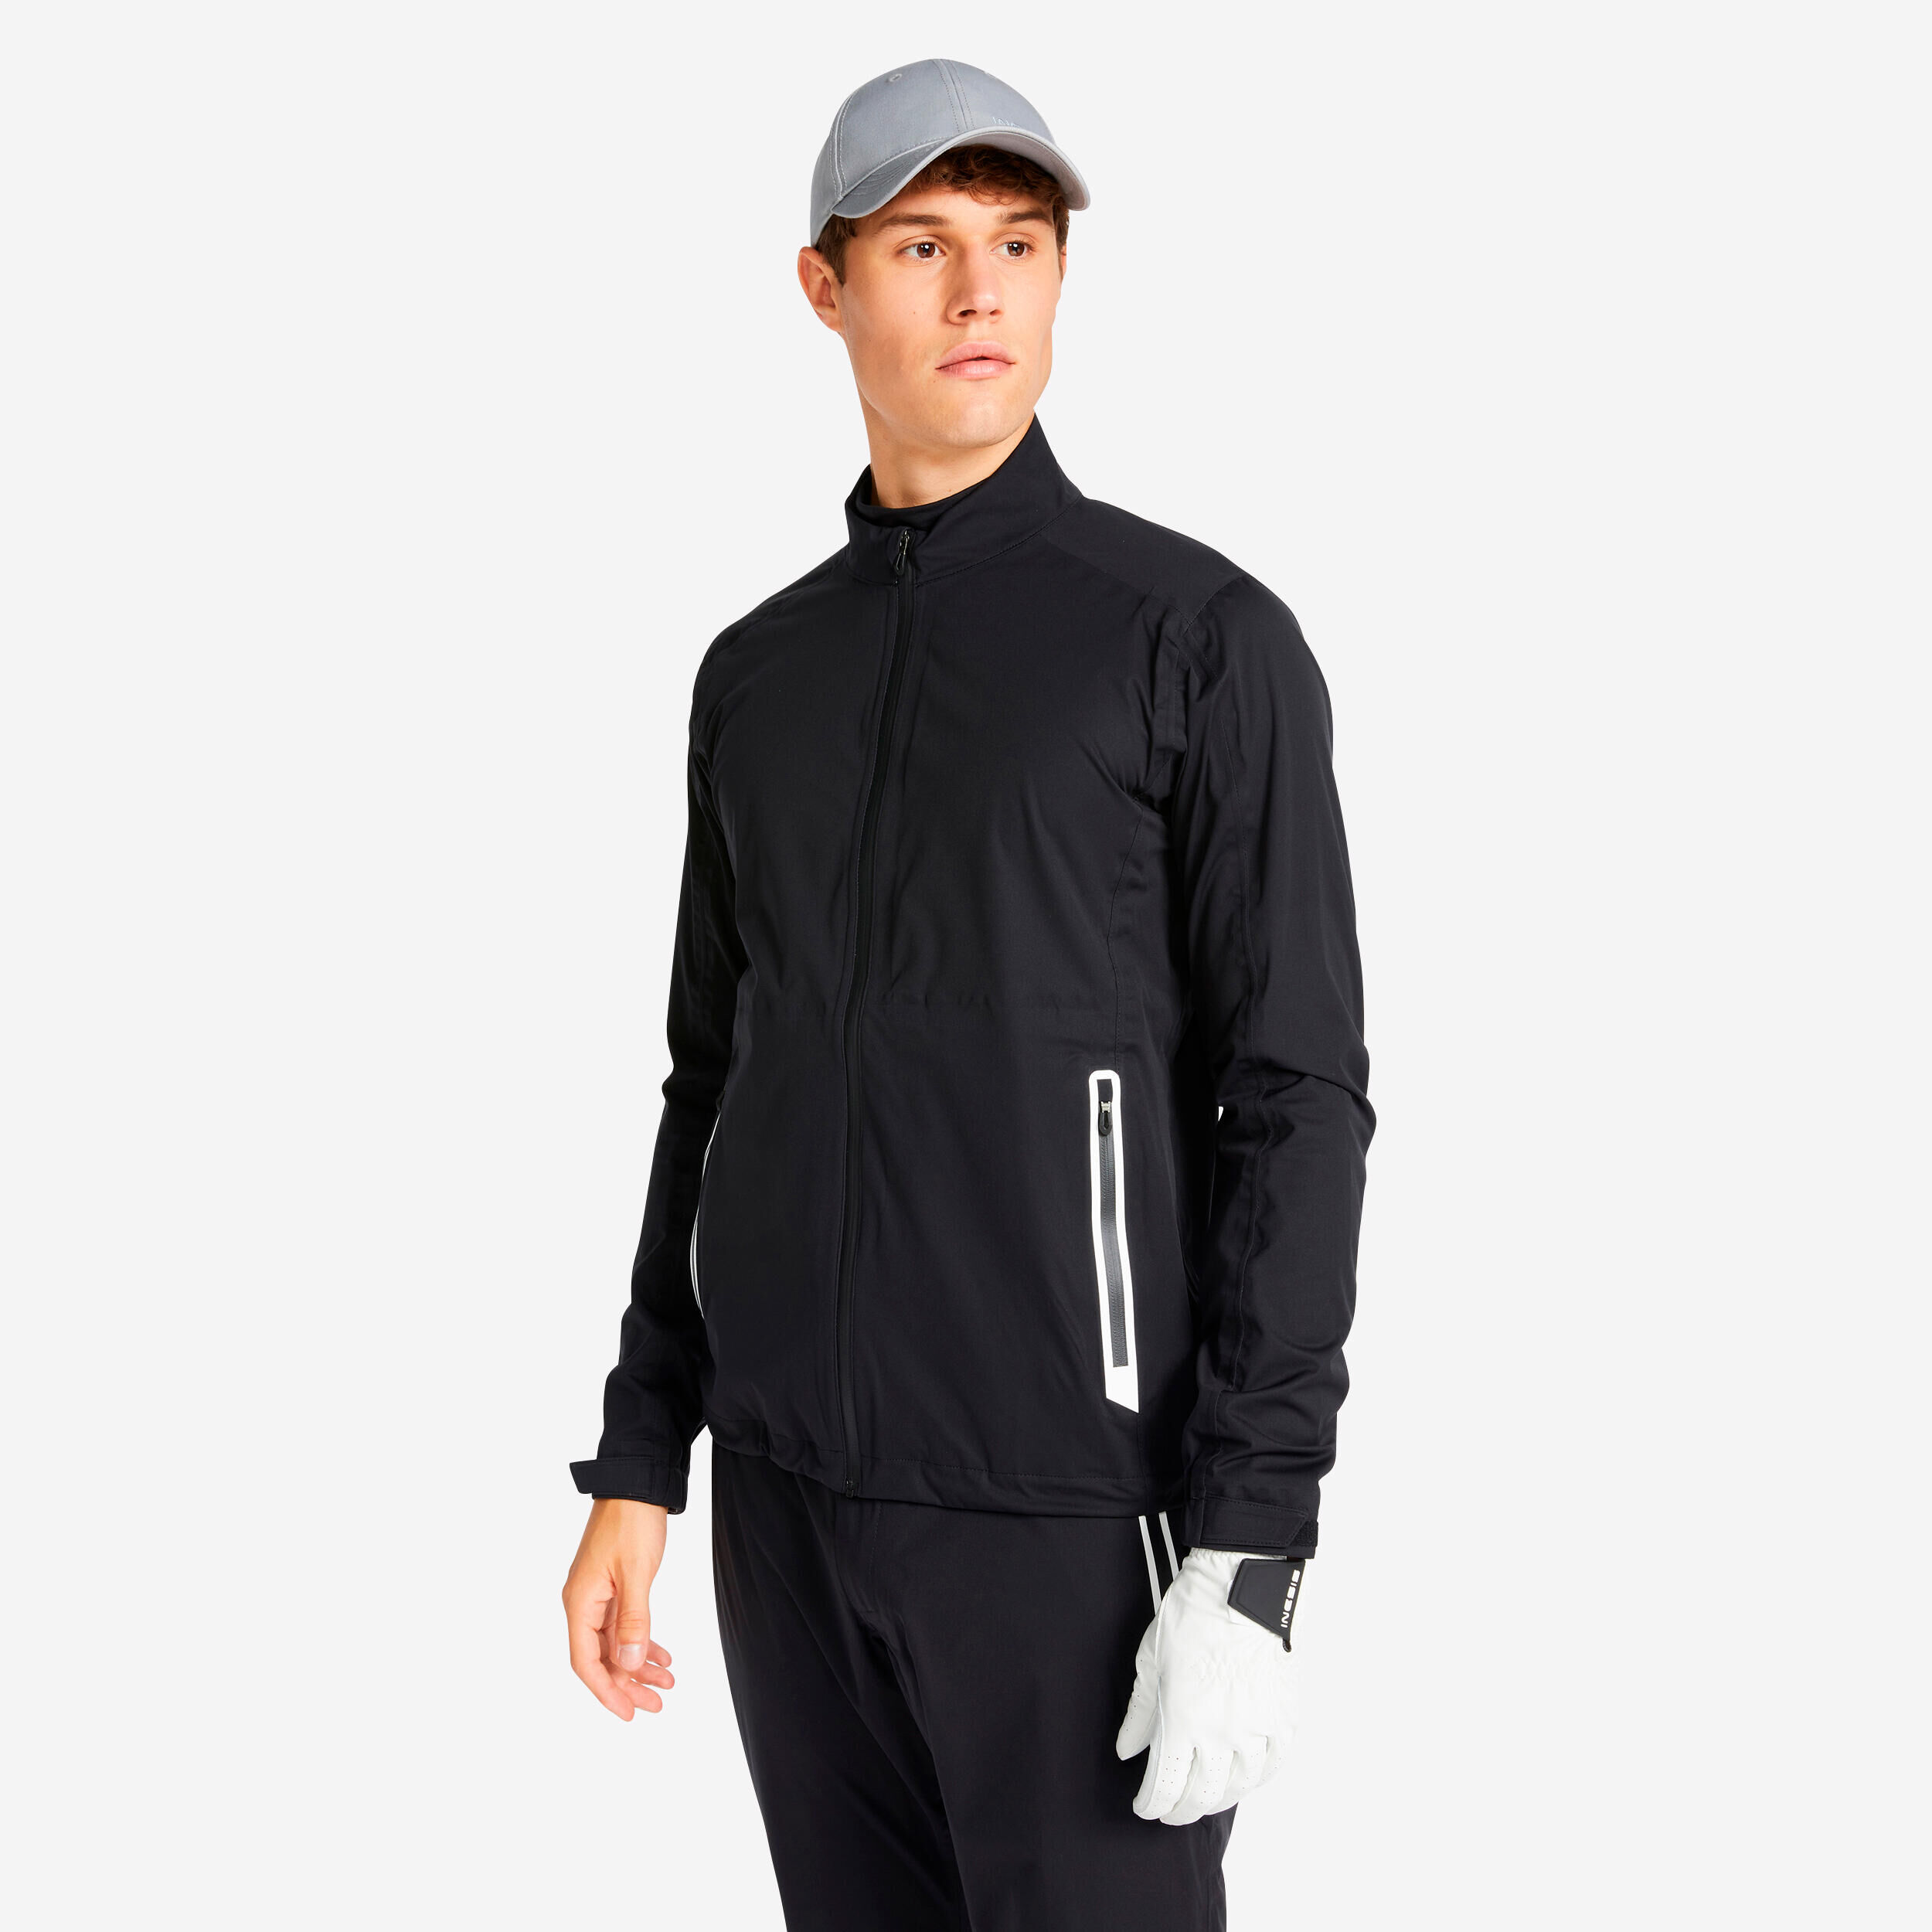 INESIS Men's Golf Waterproof Rain Jacket - RW500 Black